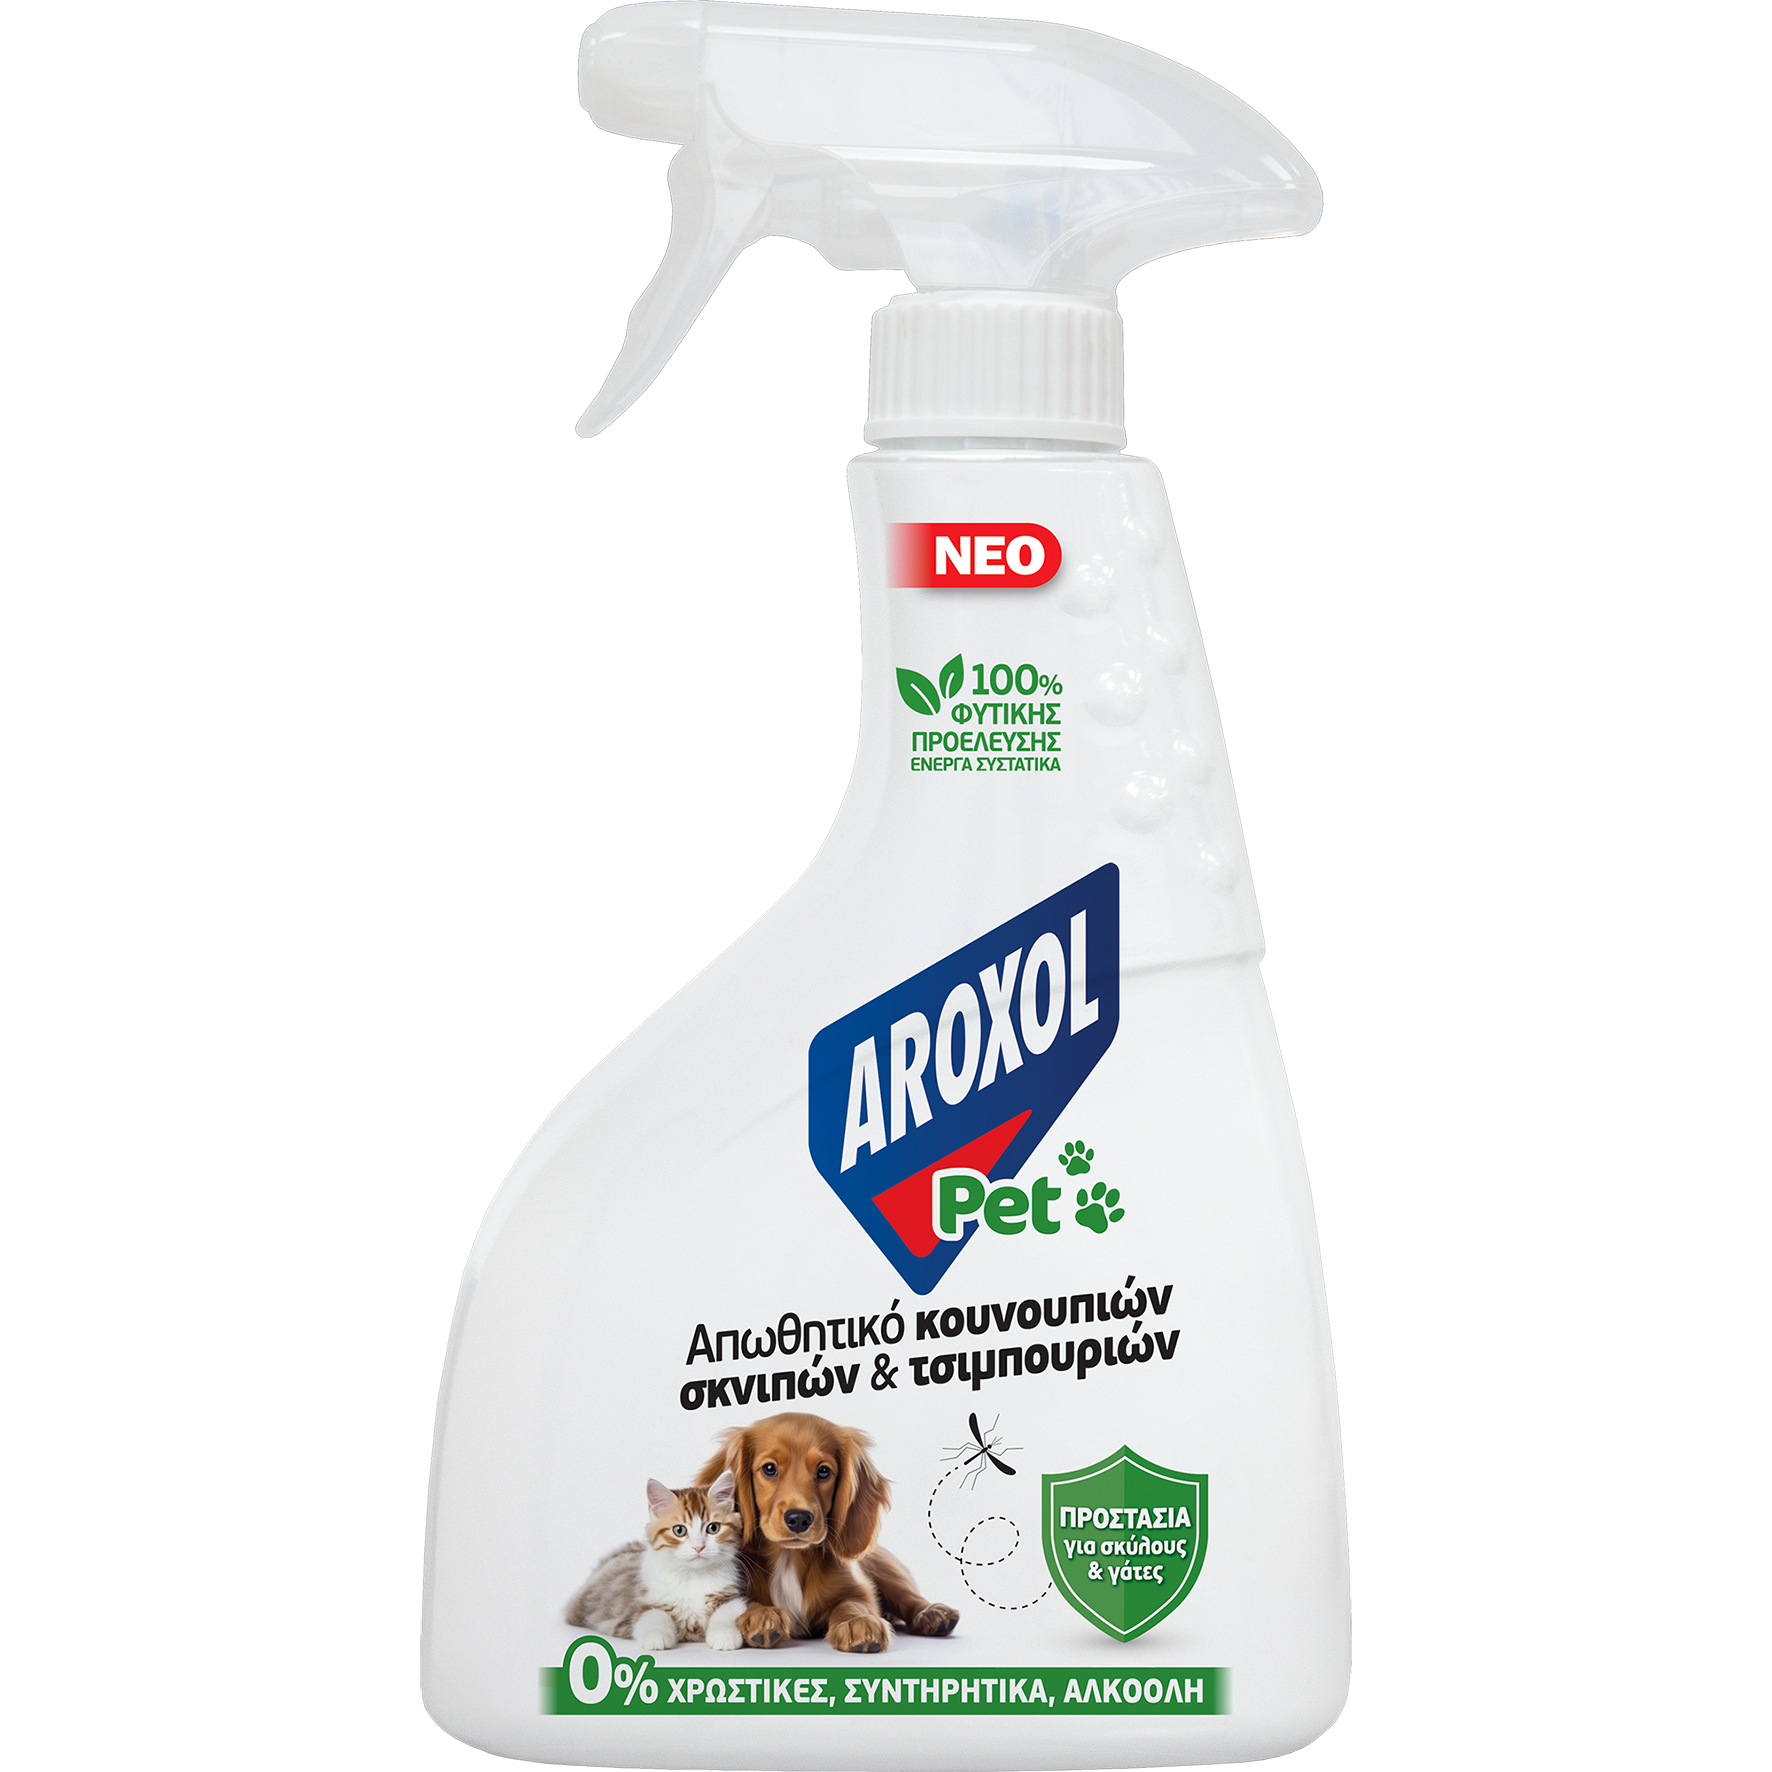 Εντομοαπωθητικό Spray Pet για Κατοικίδια Aroxol (350ml)